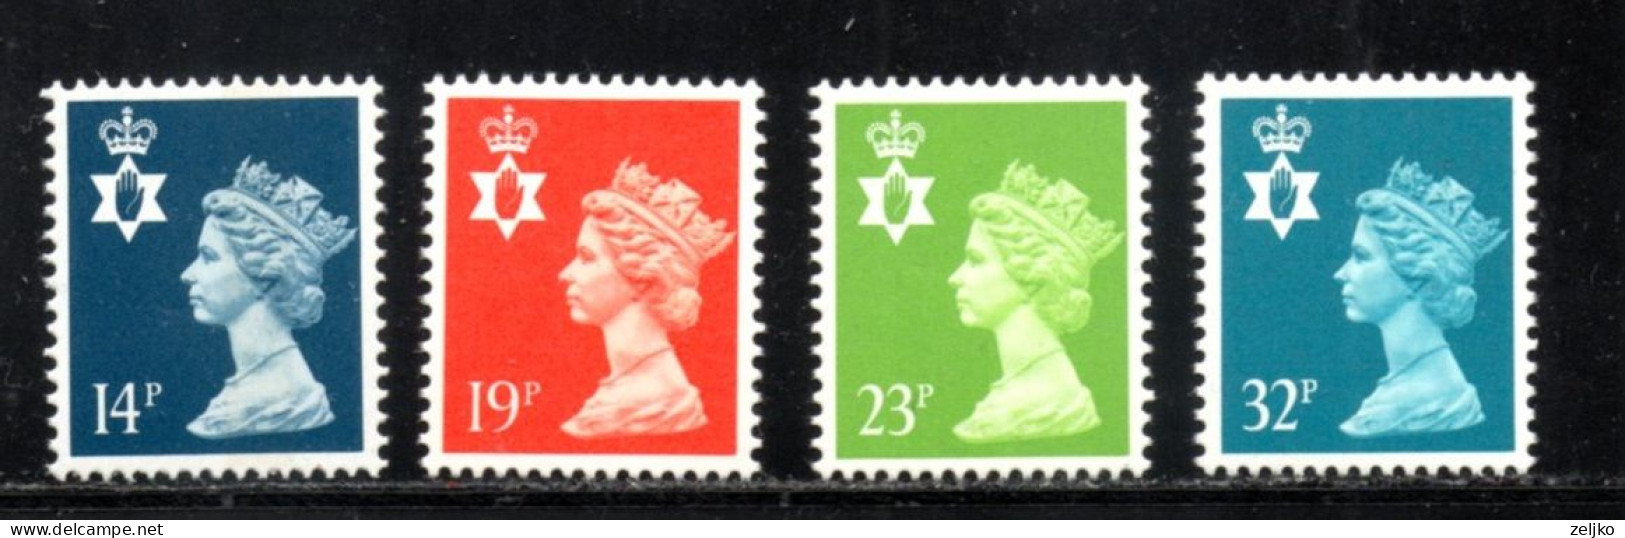 UK, GB, Great Britain, Regional Issue, North Ireland, MNH, 1988, Michel 47 - 50, Queen Elizabeth - Nordirland